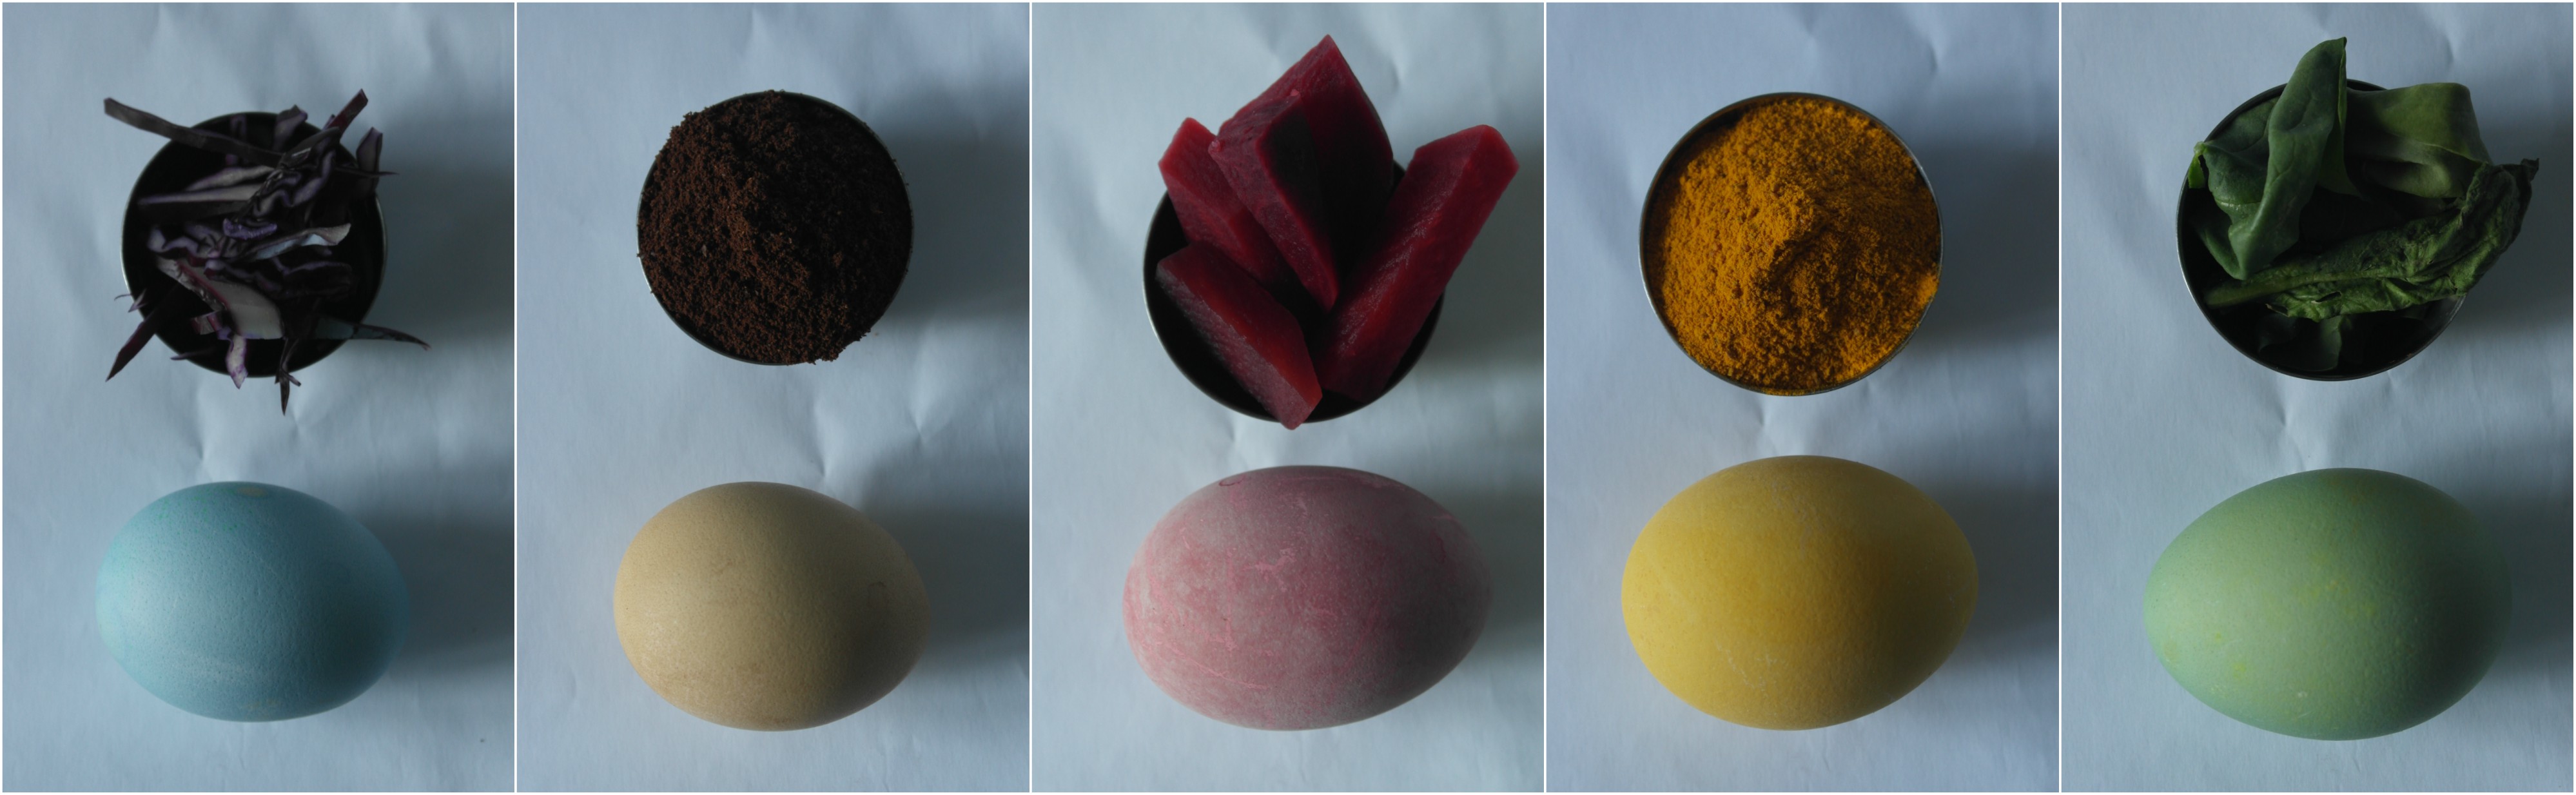 Ouă vopsite în culori inspirate de natură: Sfeclă, turmeric, varză roșie, cafea și spanac